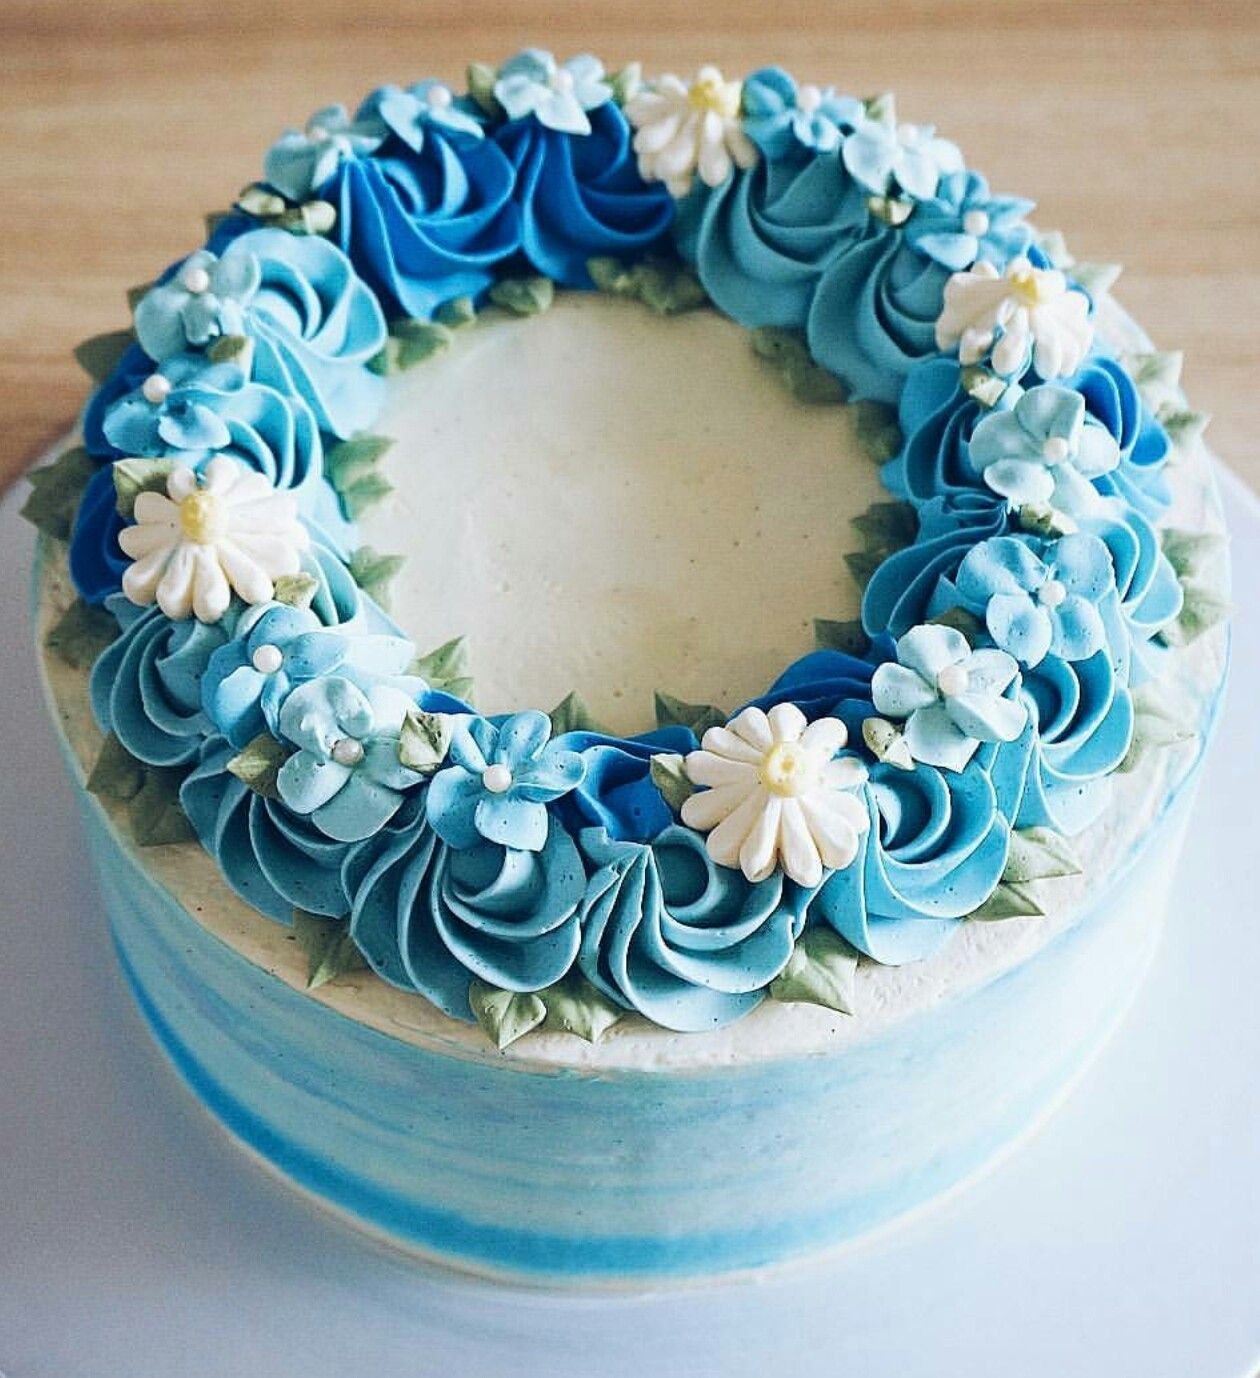 Кремово синий. Голубой торт крем чиз. Торт с синим кремом чиз. Кремовое украшение торта. Украшение торта в голубых тонах.